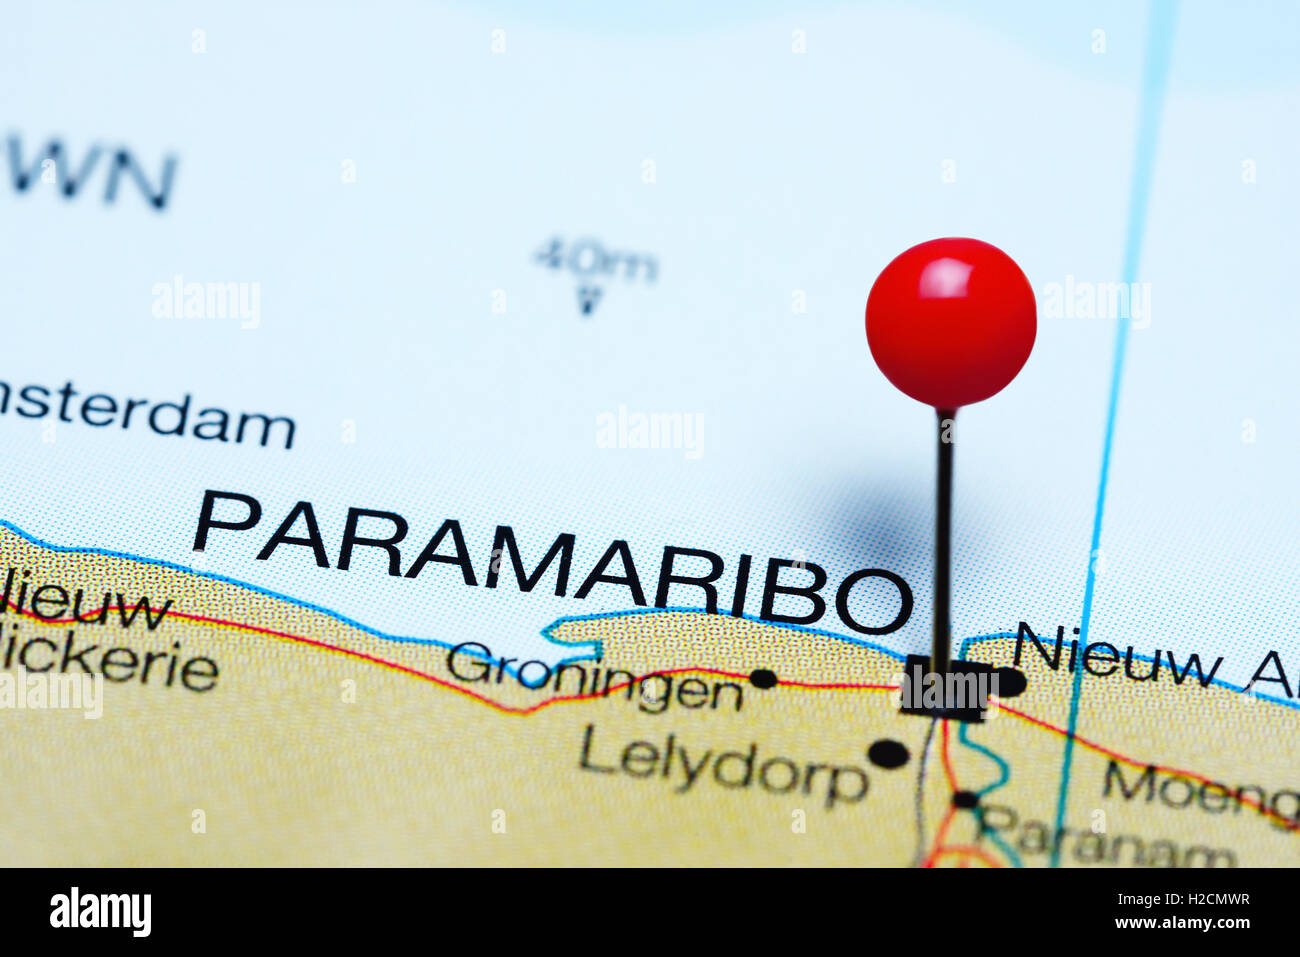 Paramaribo anclado en un mapa de Suriname Foto de stock